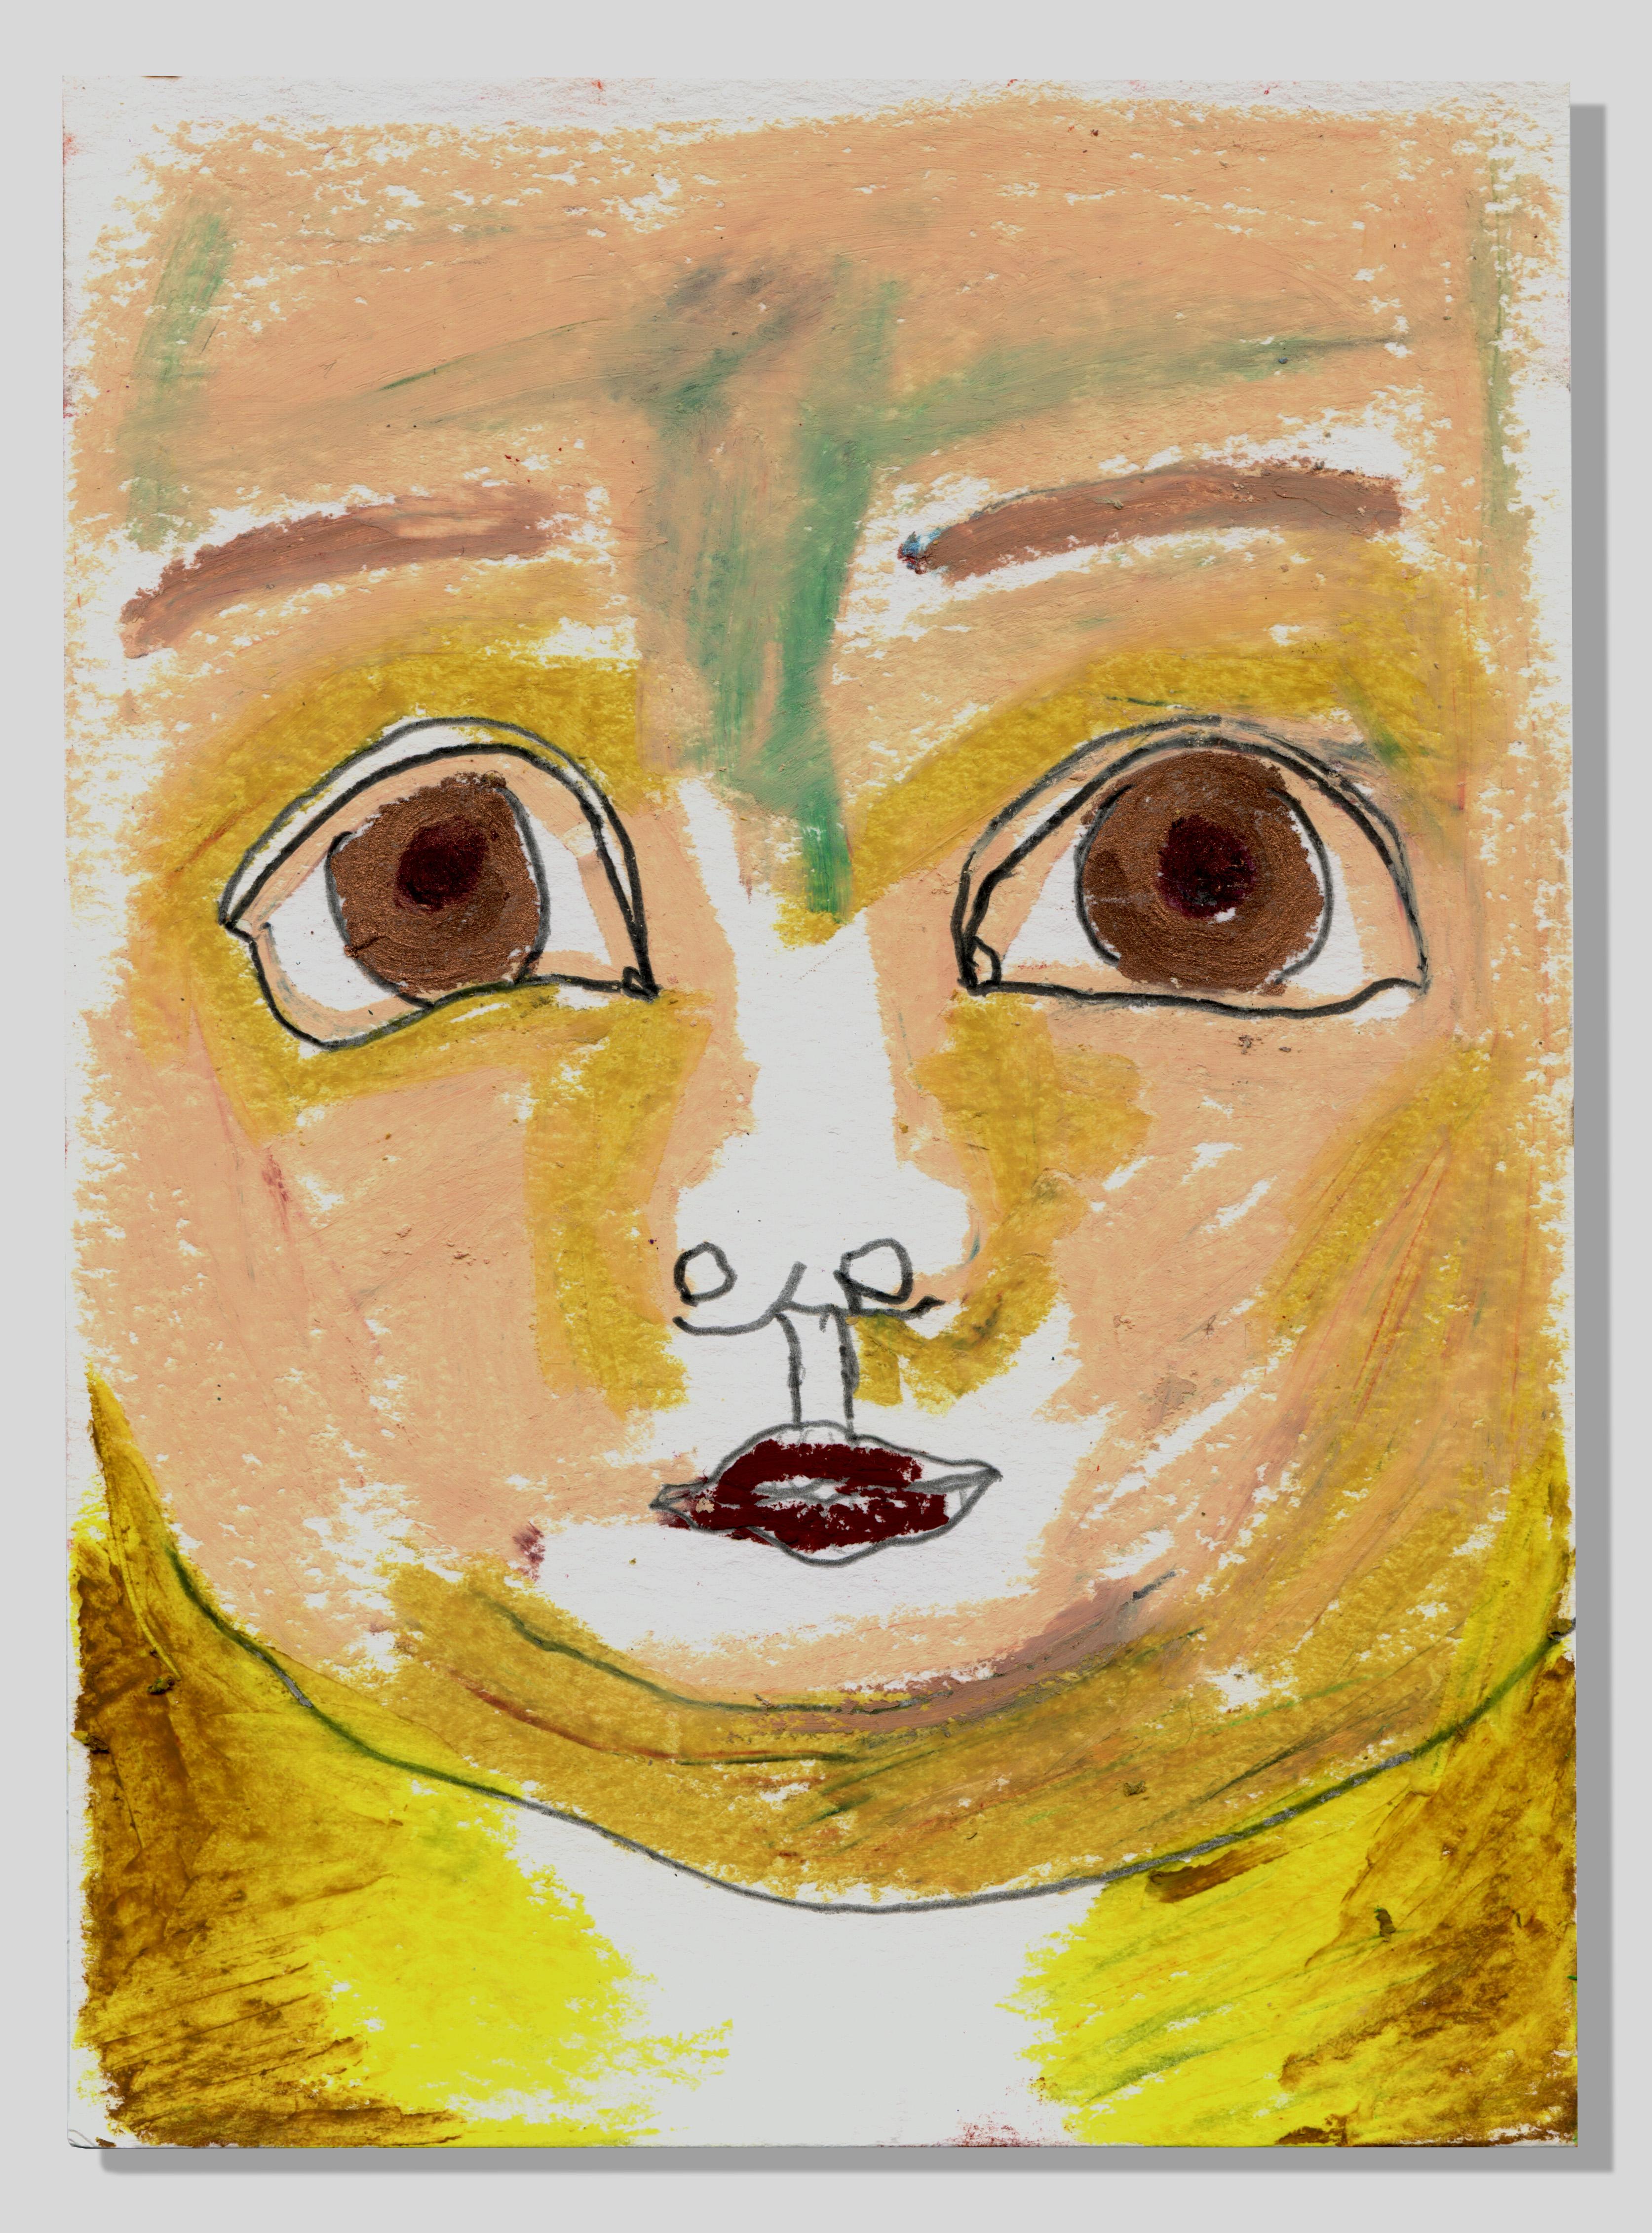 Dulphe Pinheiro Machado Figurative Art - Face in yellow